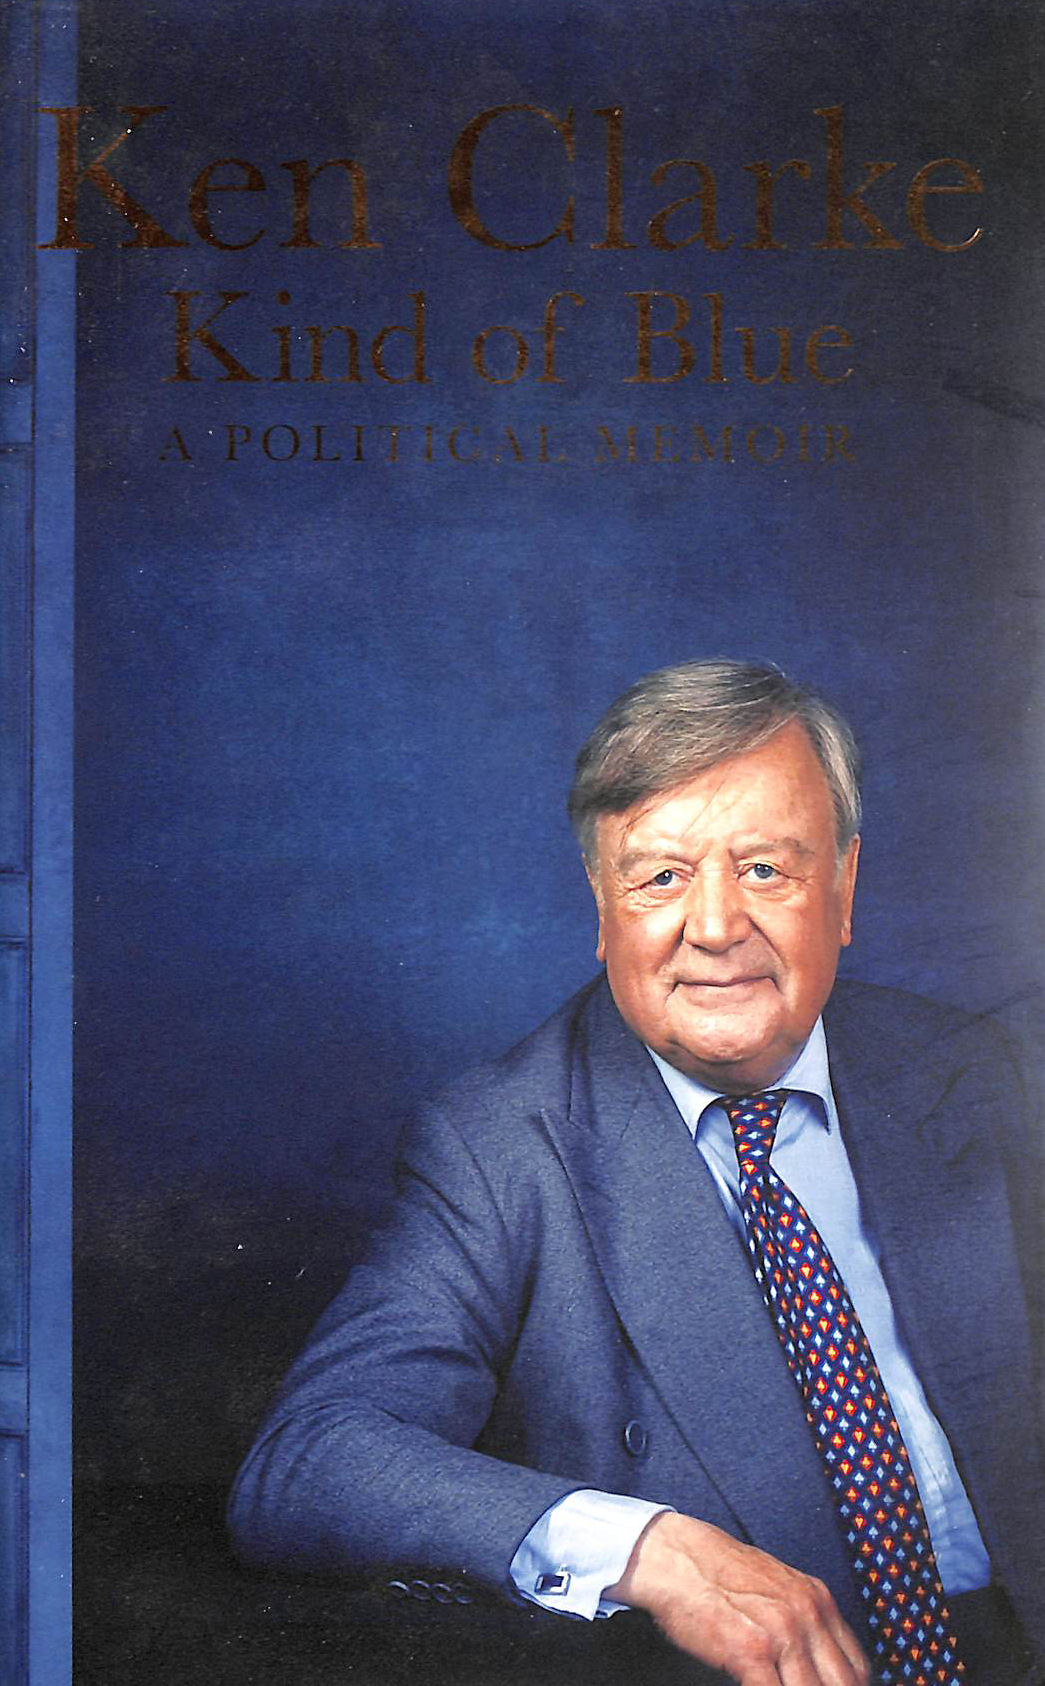 CLARKE, KEN - Kind of Blue: A Political Memoir